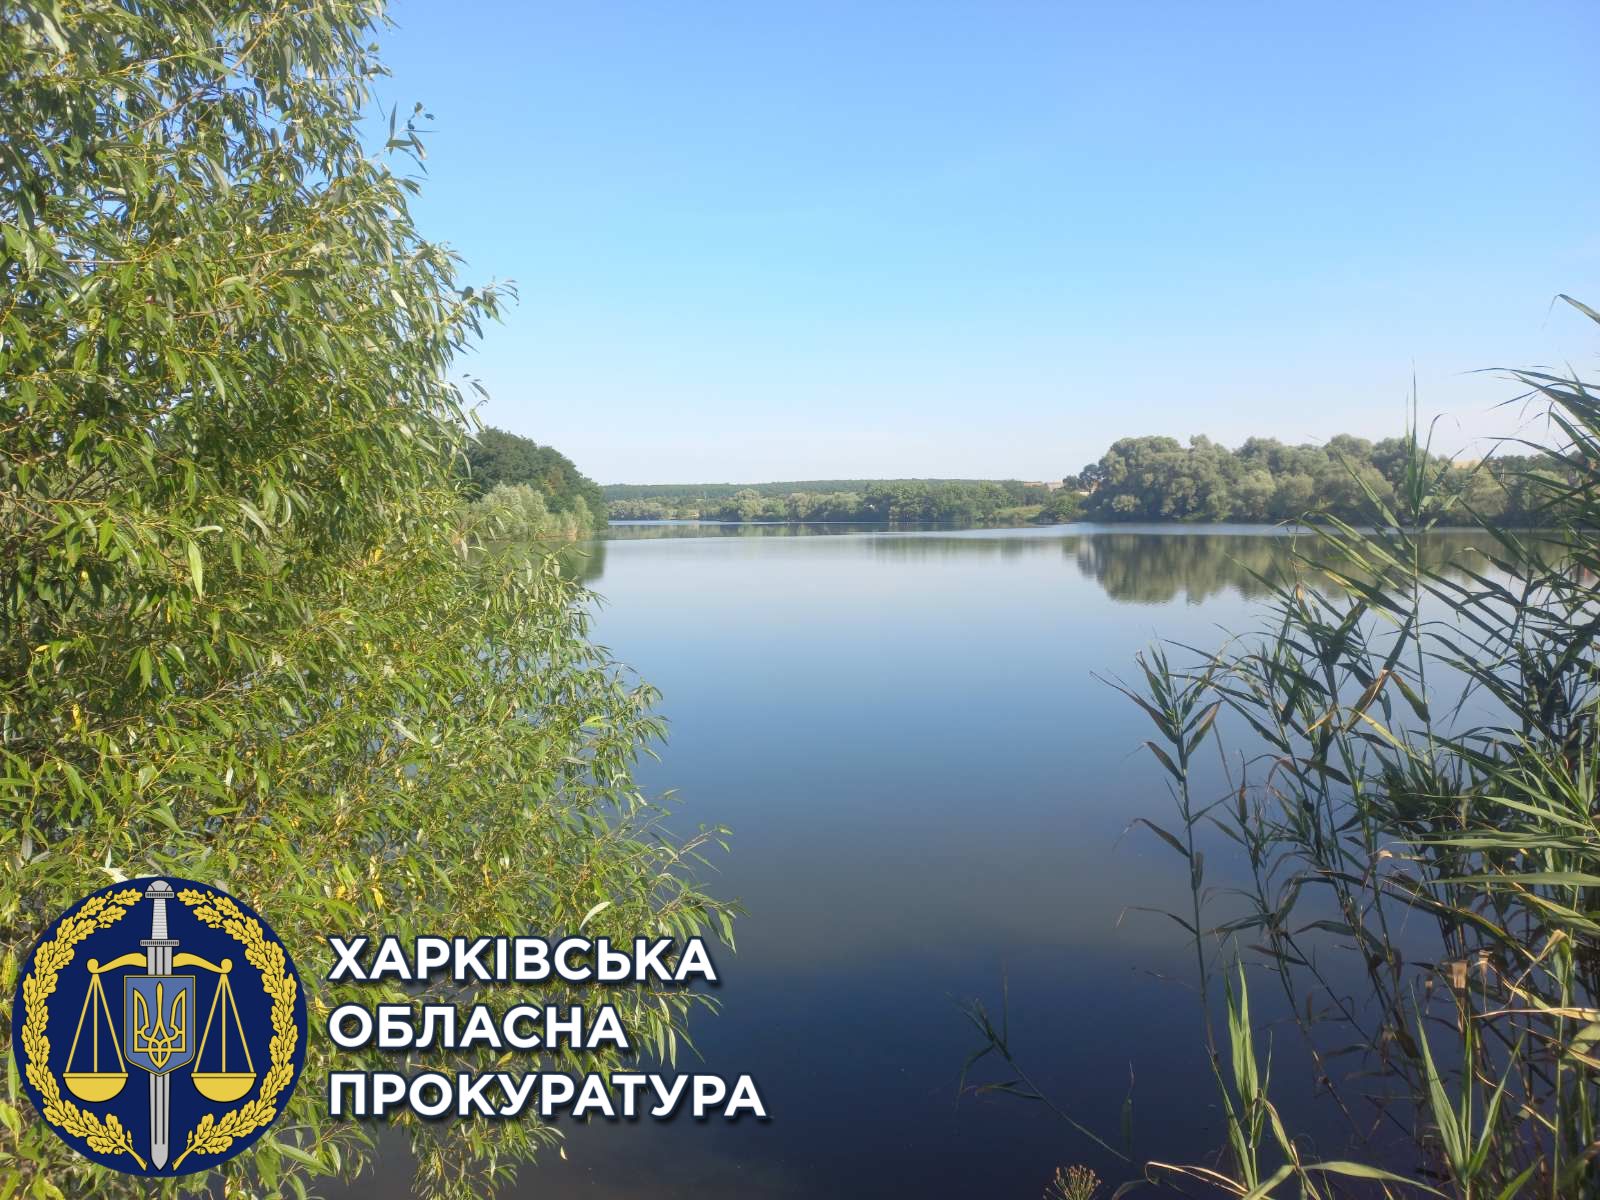 Завдяки прокуратурі державі повернуто земельні ділянки на Харківщині вартістю понад 260 млн грн (ФОТО)